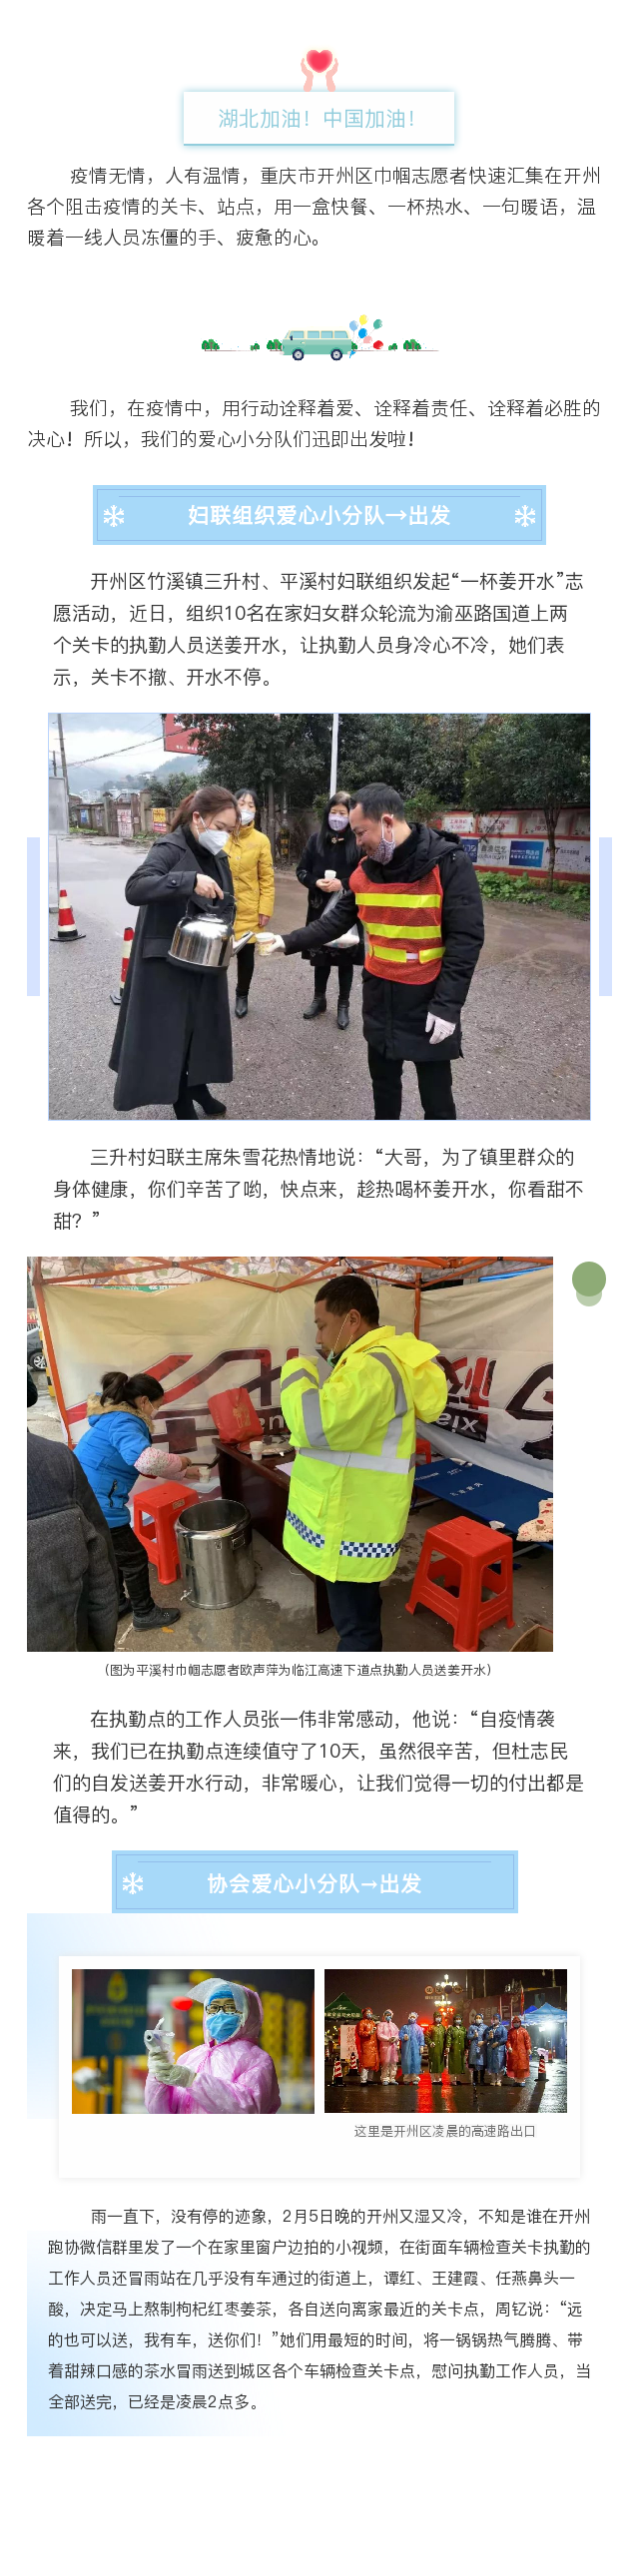 疫情防控“她”力量| 重庆市开州区巾帼志愿者众志成城守望相助